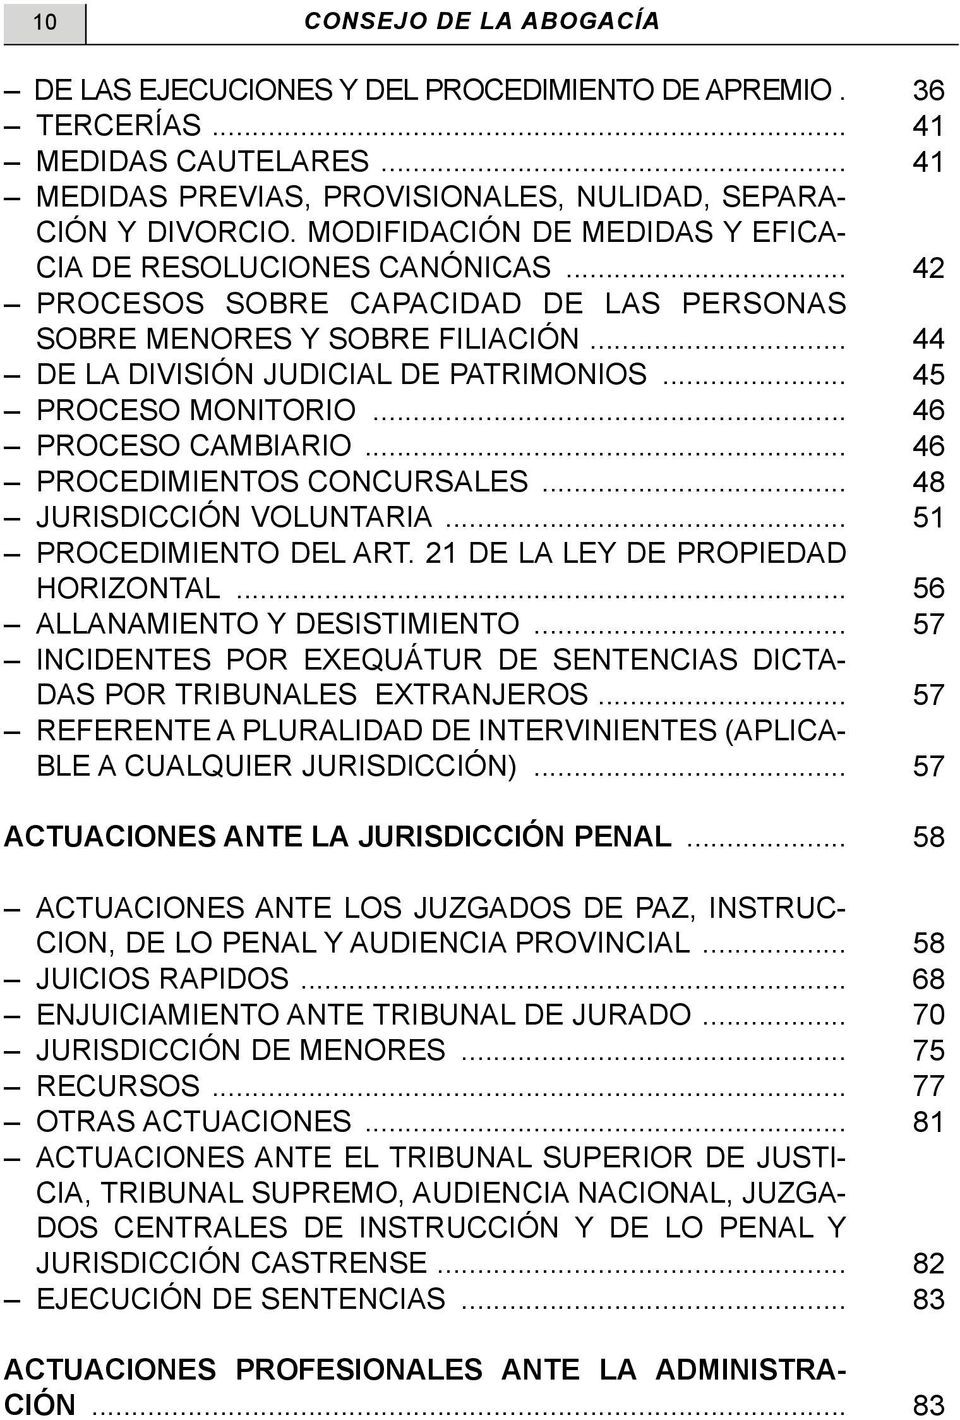 .. 45 PROCESO MONITORIO... 46 PROCESO CAMBIARIO... 46 PROCEDIMIENTOS CONCURSALES... 48 JURISDICCIÓN VOLUNTARIA... 51 PROCEDIMIENTO DEL ART. 21 DE LA LEY DE PROPIEDAD HORIZONTAL.